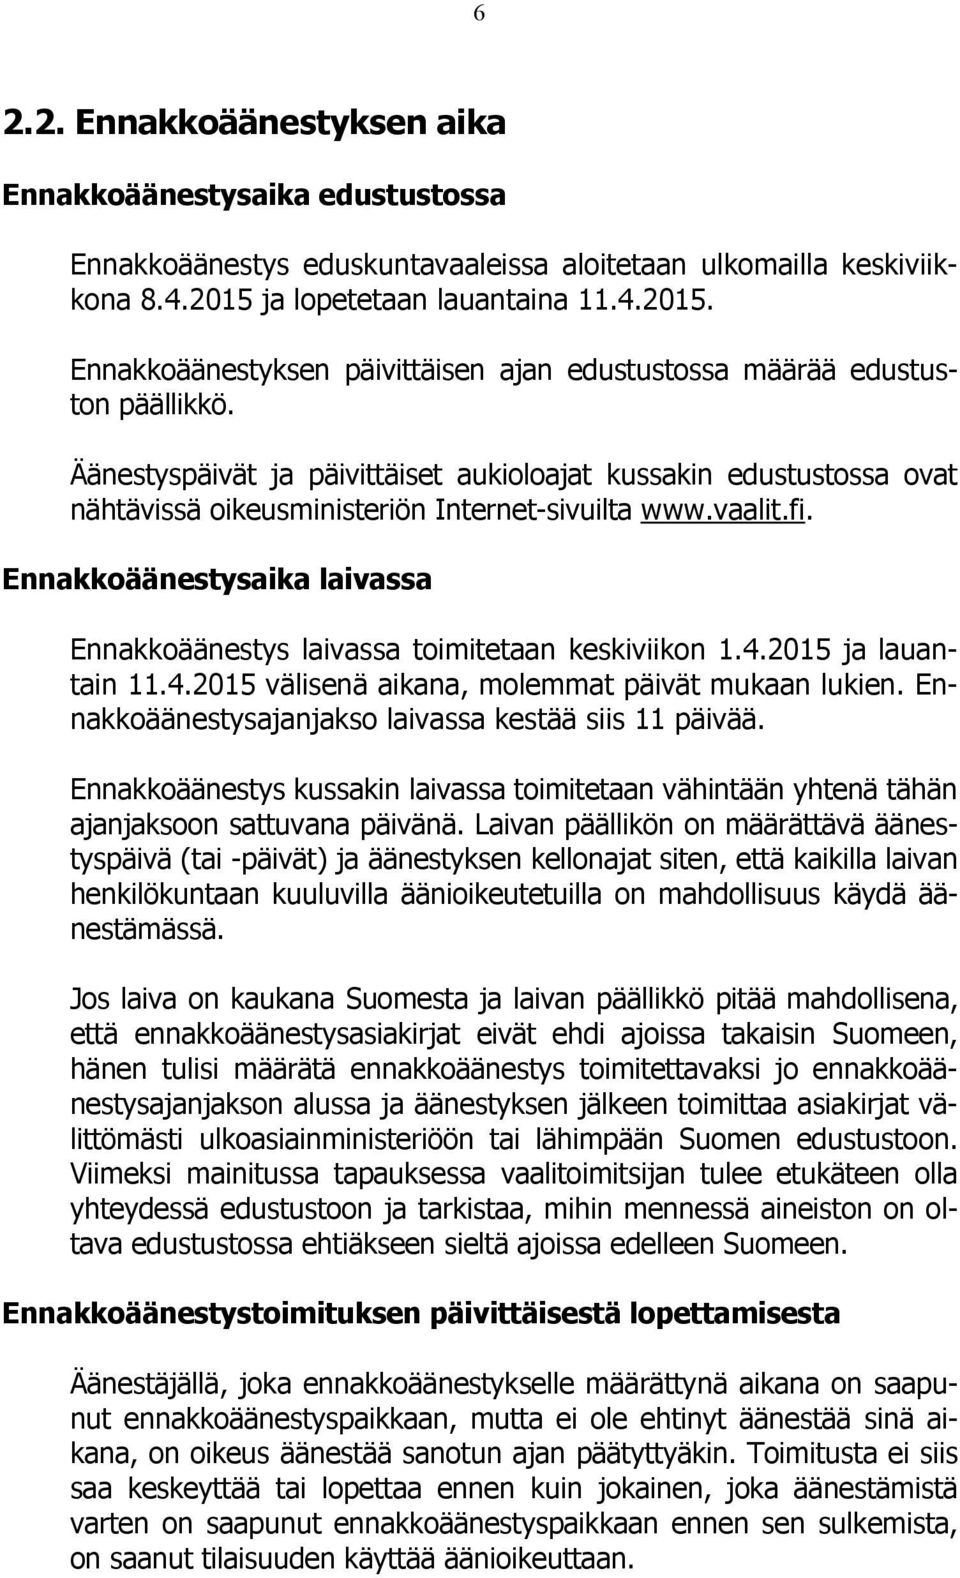 Äänestyspäivät ja päivittäiset aukioloajat kussakin edustustossa ovat nähtävissä oikeusministeriön Internet-sivuilta www.vaalit.fi.